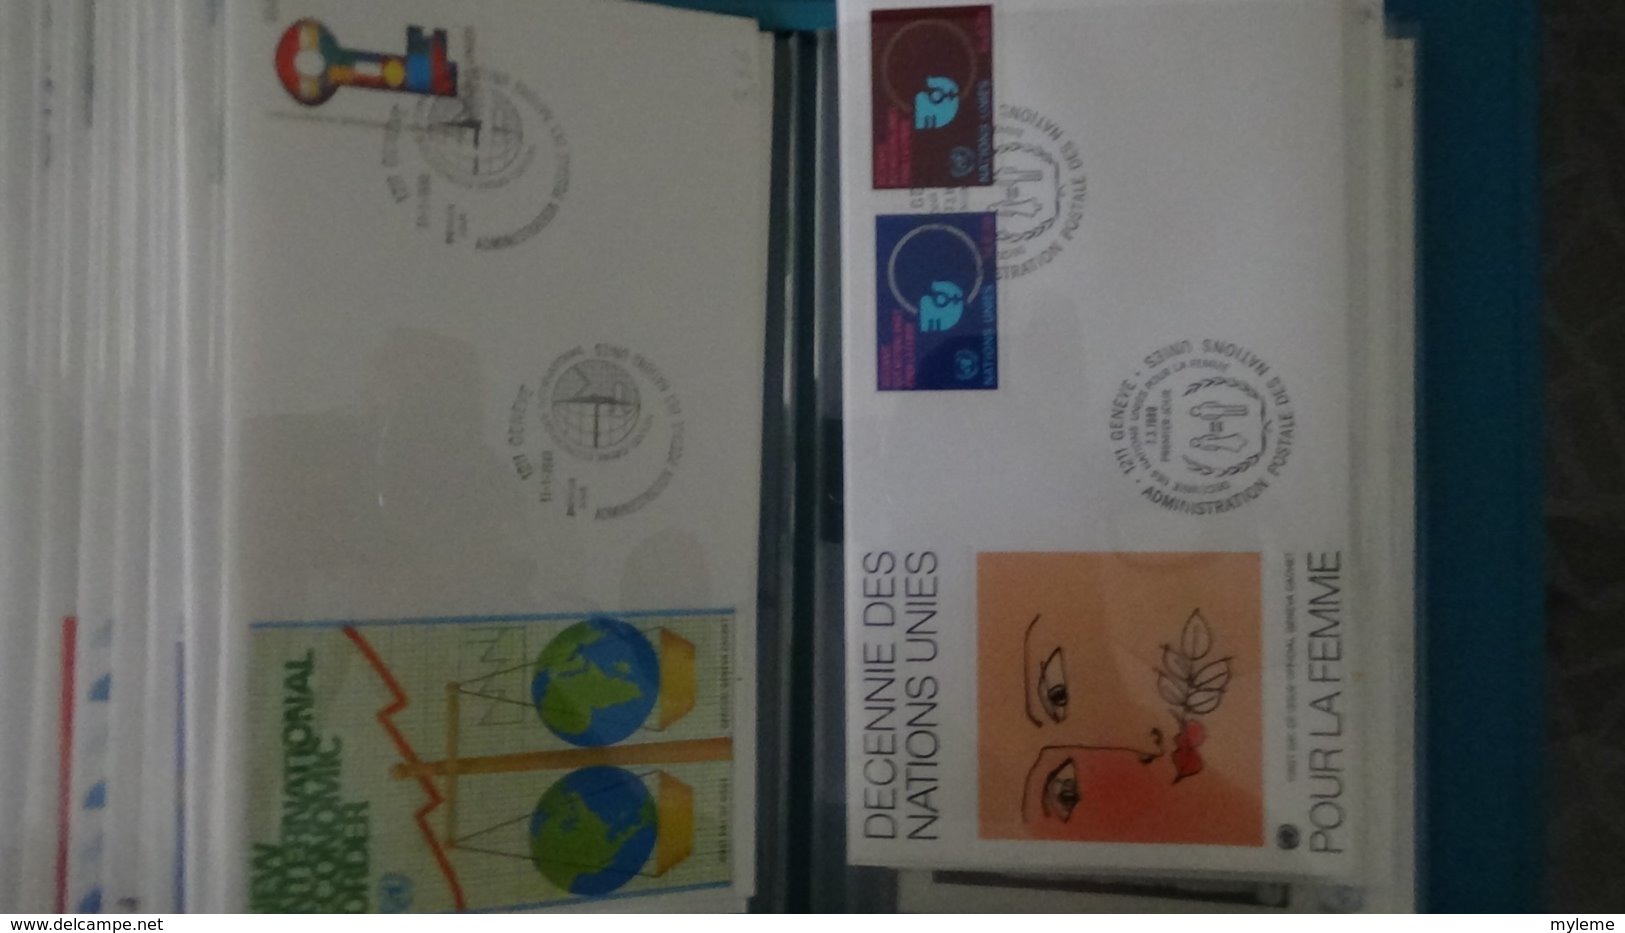 Très belle collection de 98 enveloppes 1er jour des NATIONS UNIES dans son présentoir d'origine.